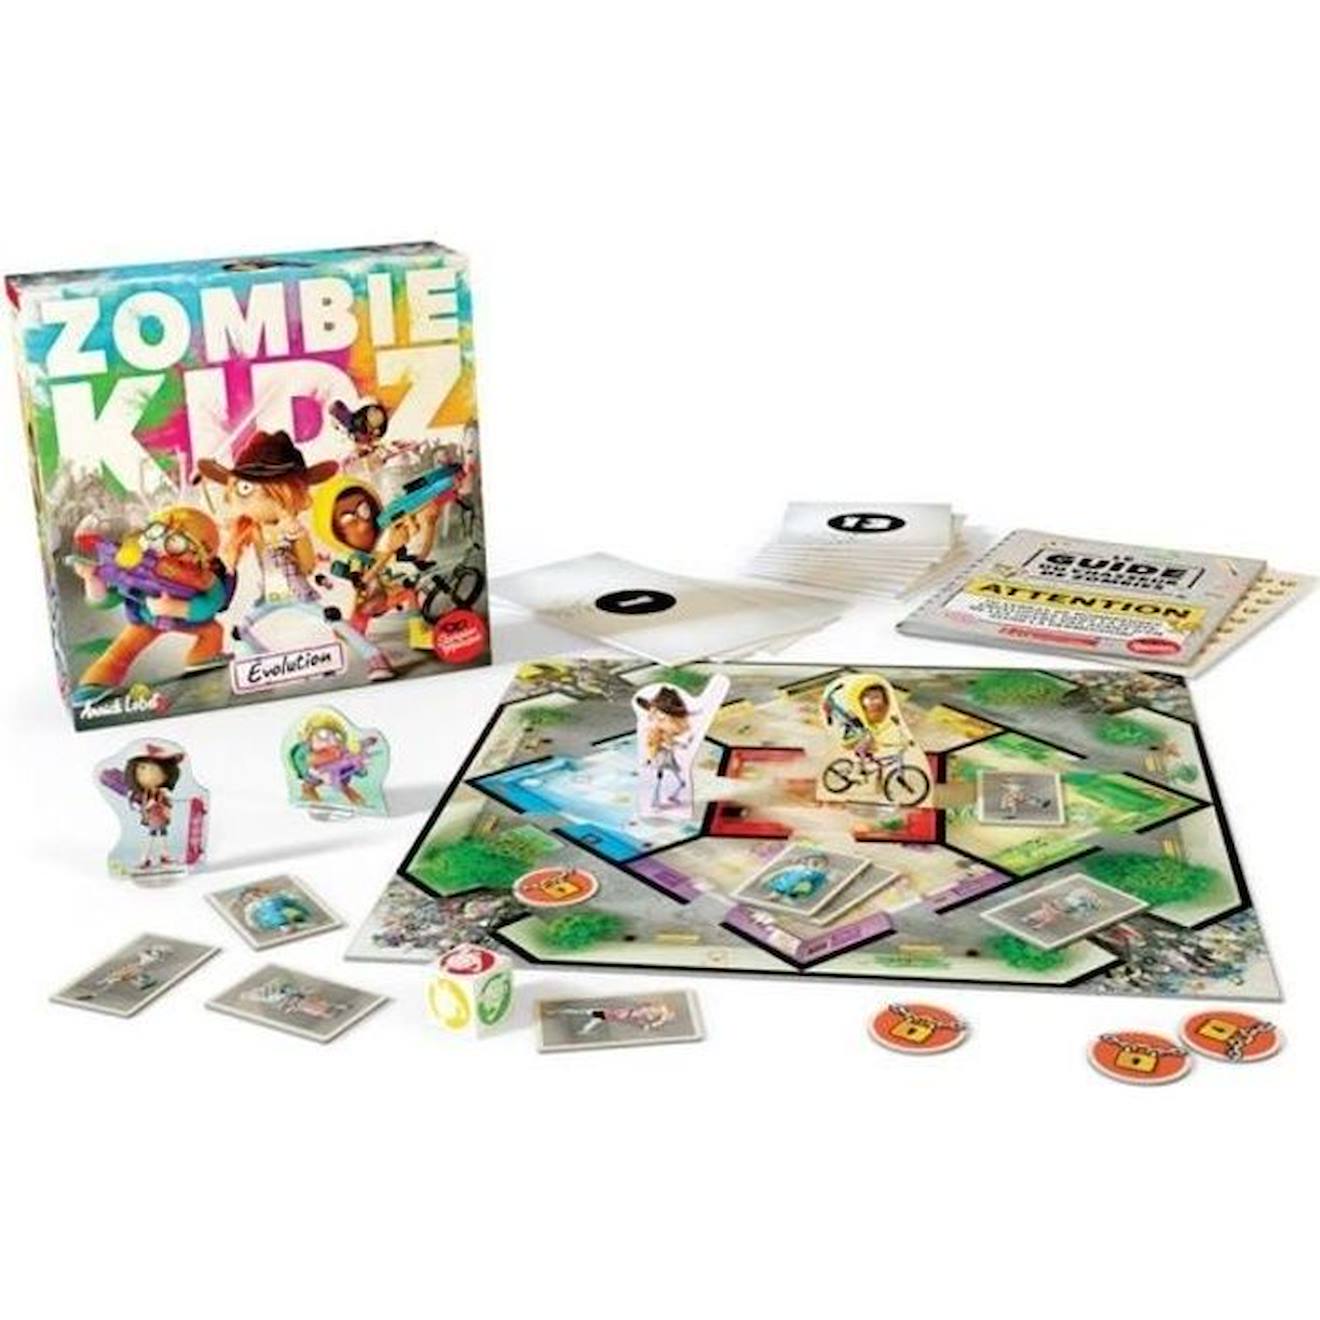 Jeu De Société Zombie Kidz Evolution - Asmodee - Jeu Coopératif - Durée 60 Min - Age 7 Ans Et Plus V